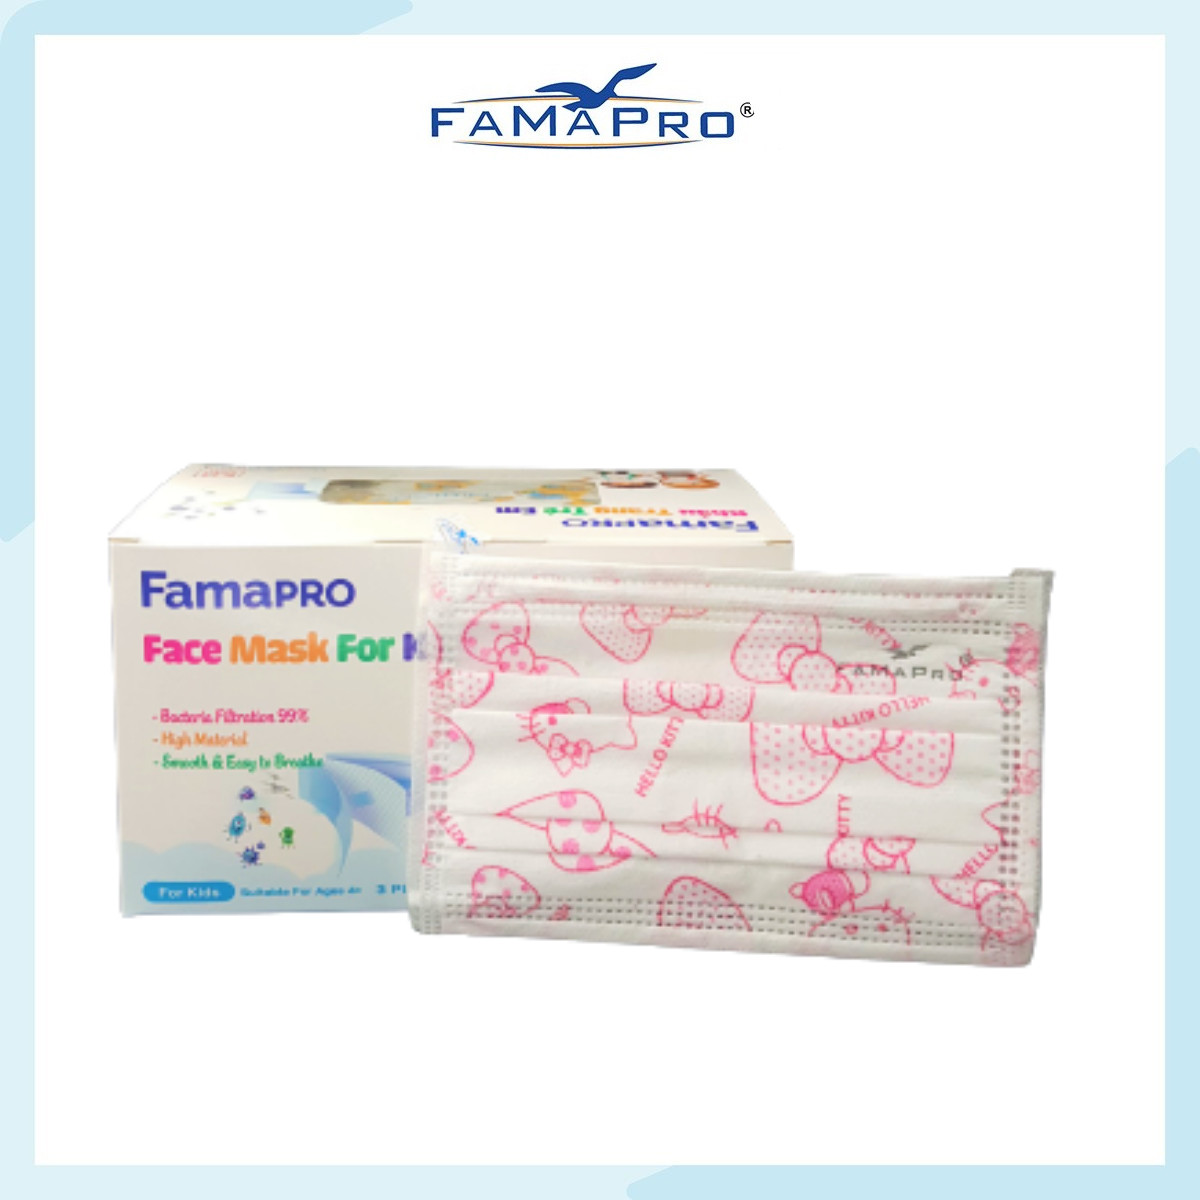 [HỘP - FAMAPRO MAX KID] - khẩu trang y tế trẻ em kháng khuẩn 3 lớp Famapro Max Kid (50 cái/ hộp) - 1 HỘP